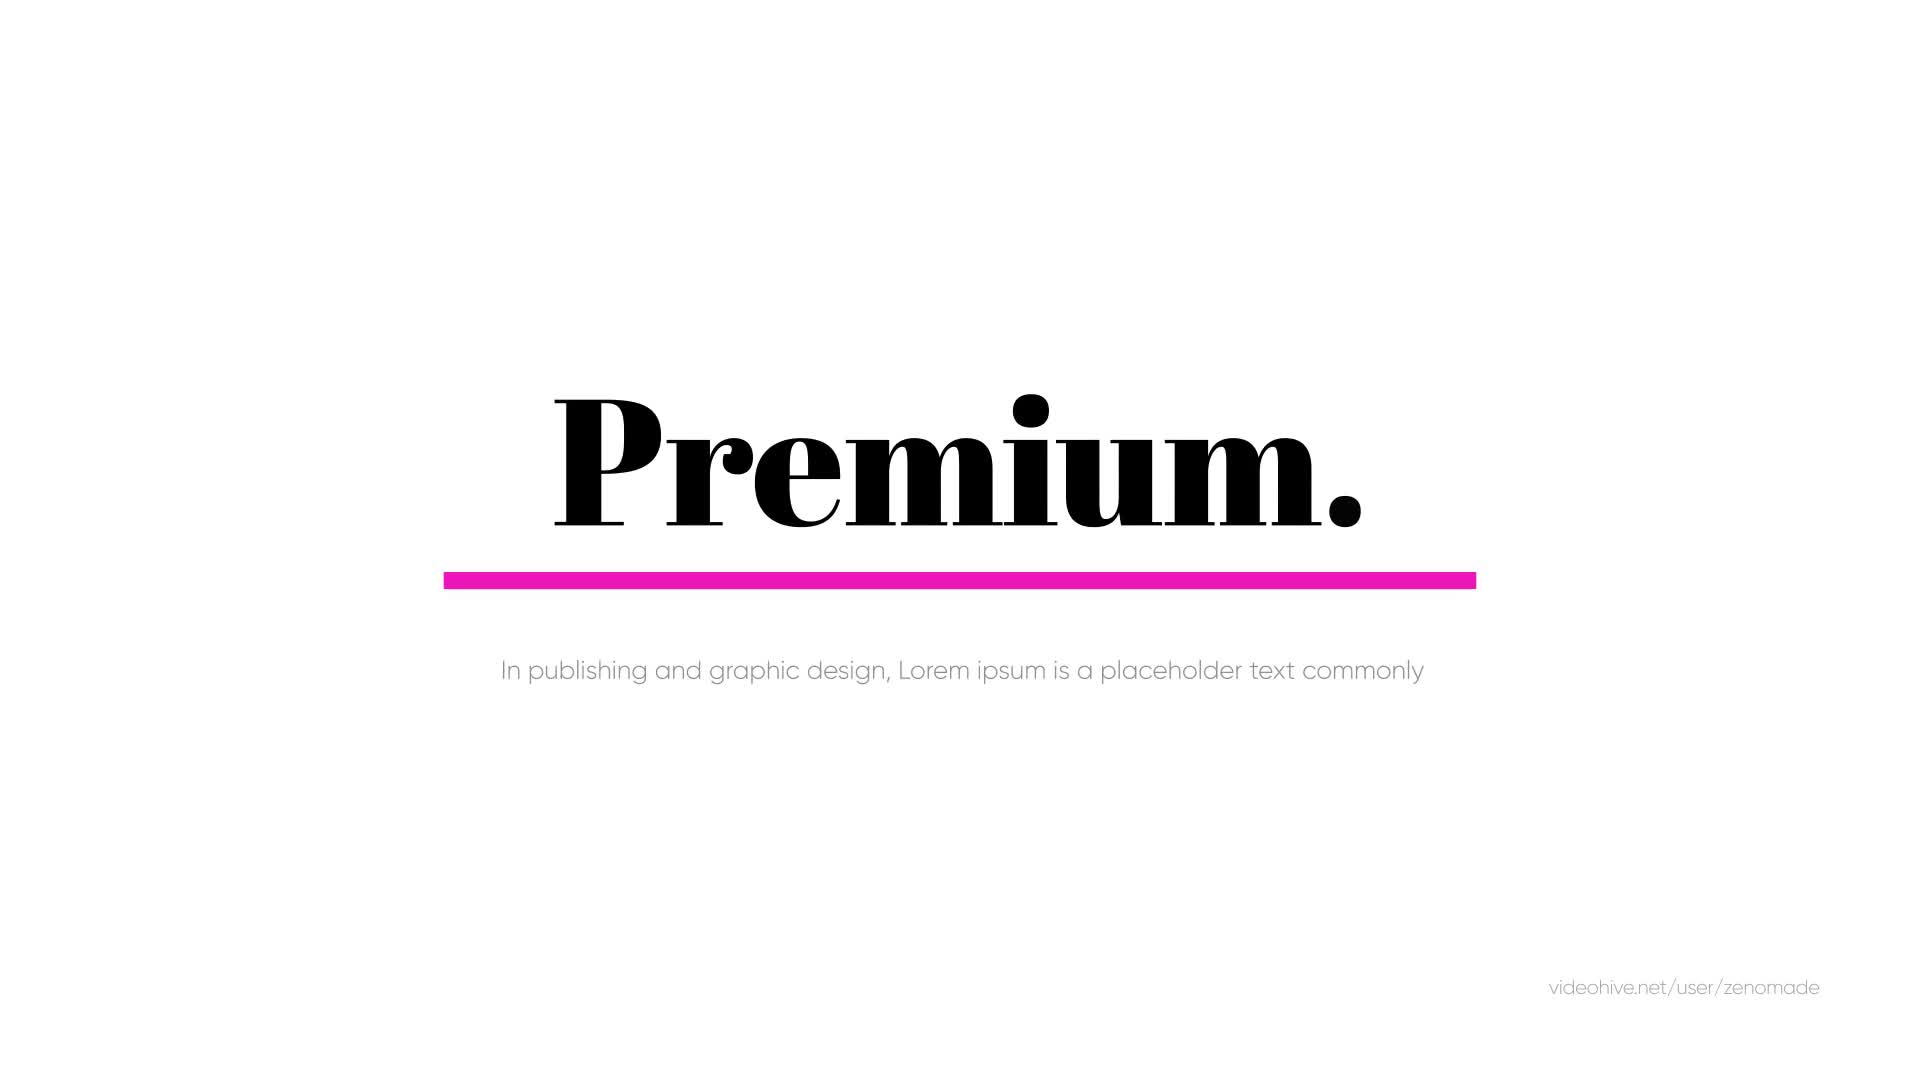 Premium Typography for Premiere Videohive 39251023 Premiere Pro Image 1